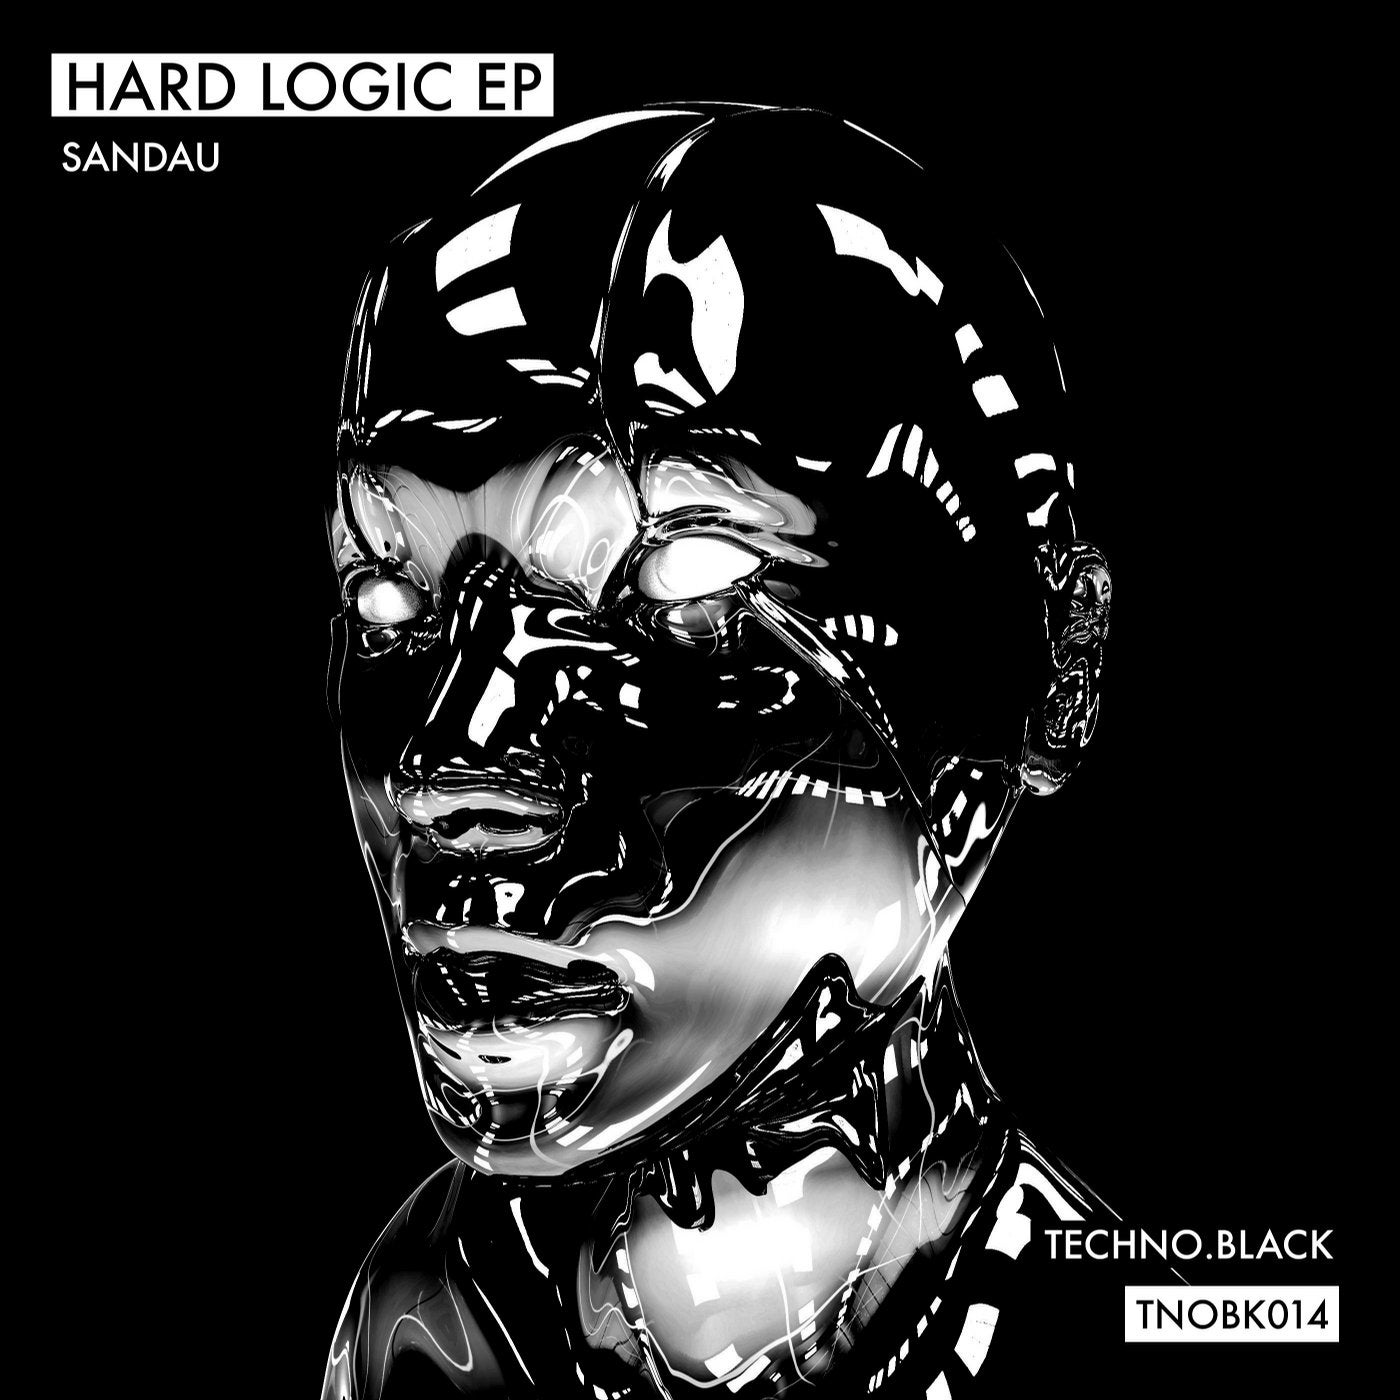 Hard Logic EP